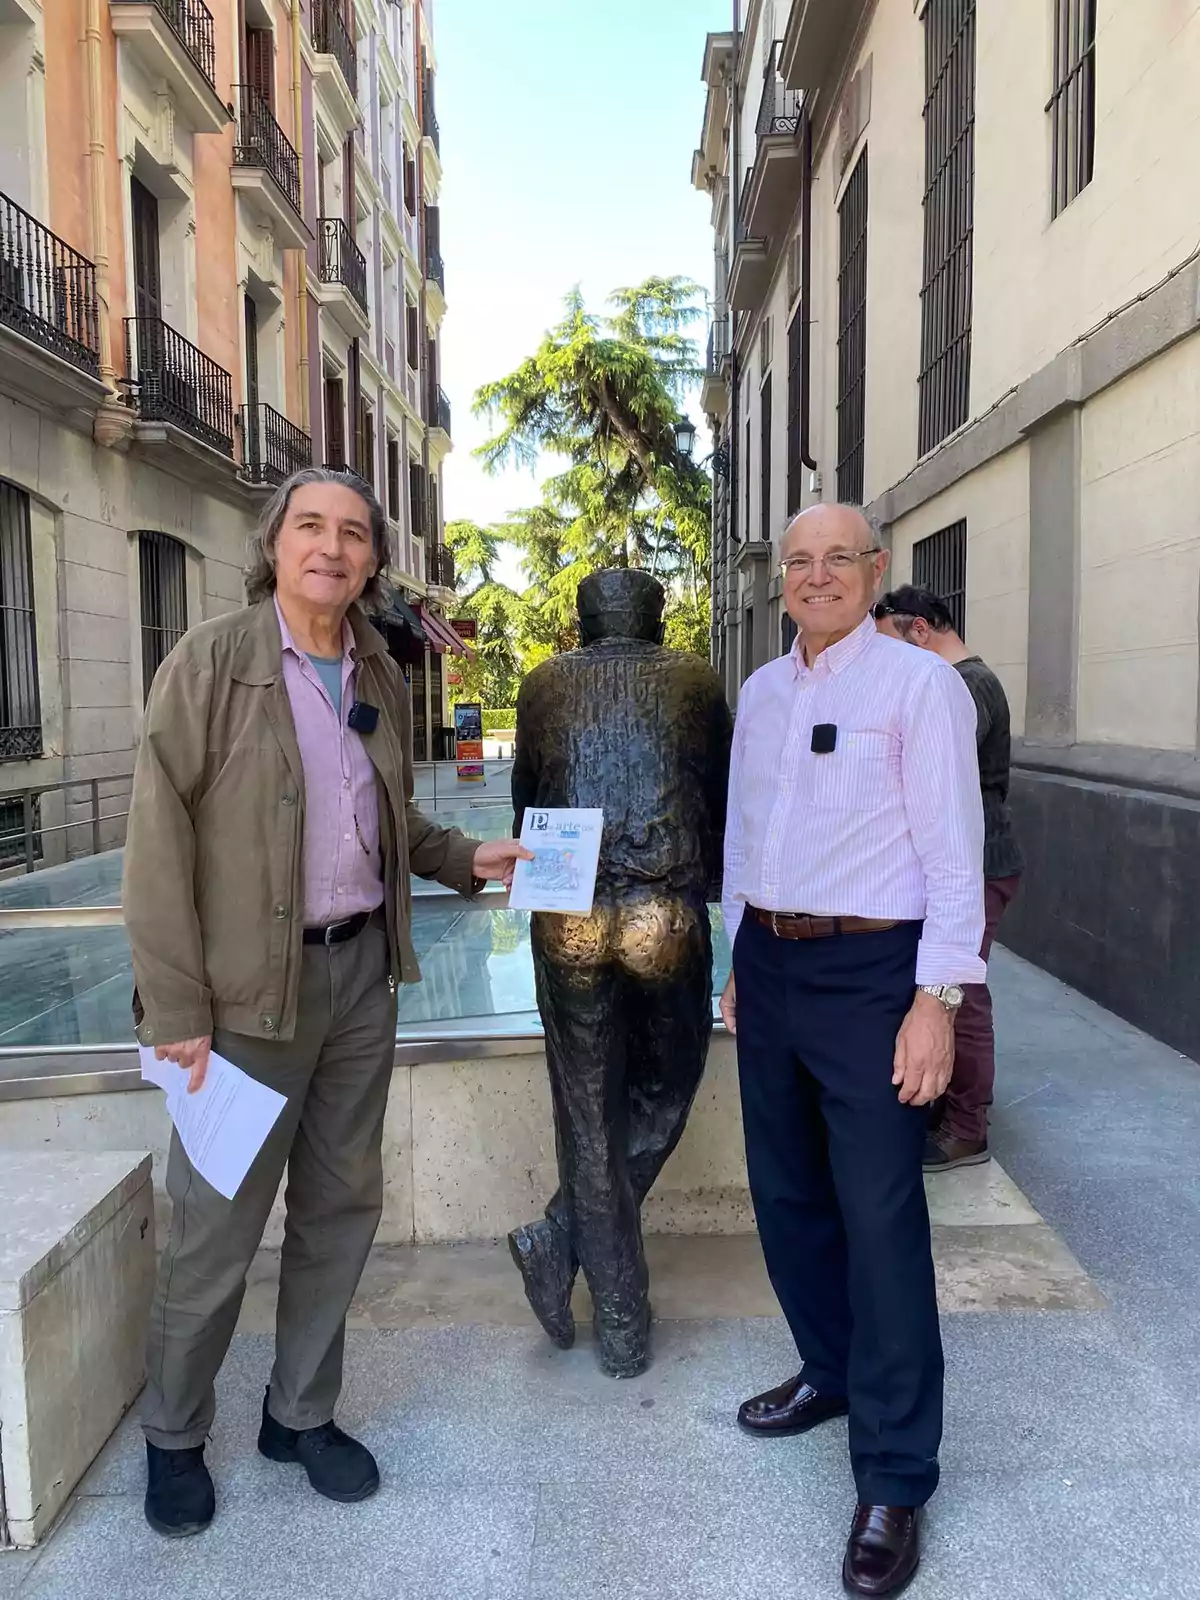 Dos hombres posan junto a una escultura en una calle rodeada de edificios, uno de ellos sostiene un papel.